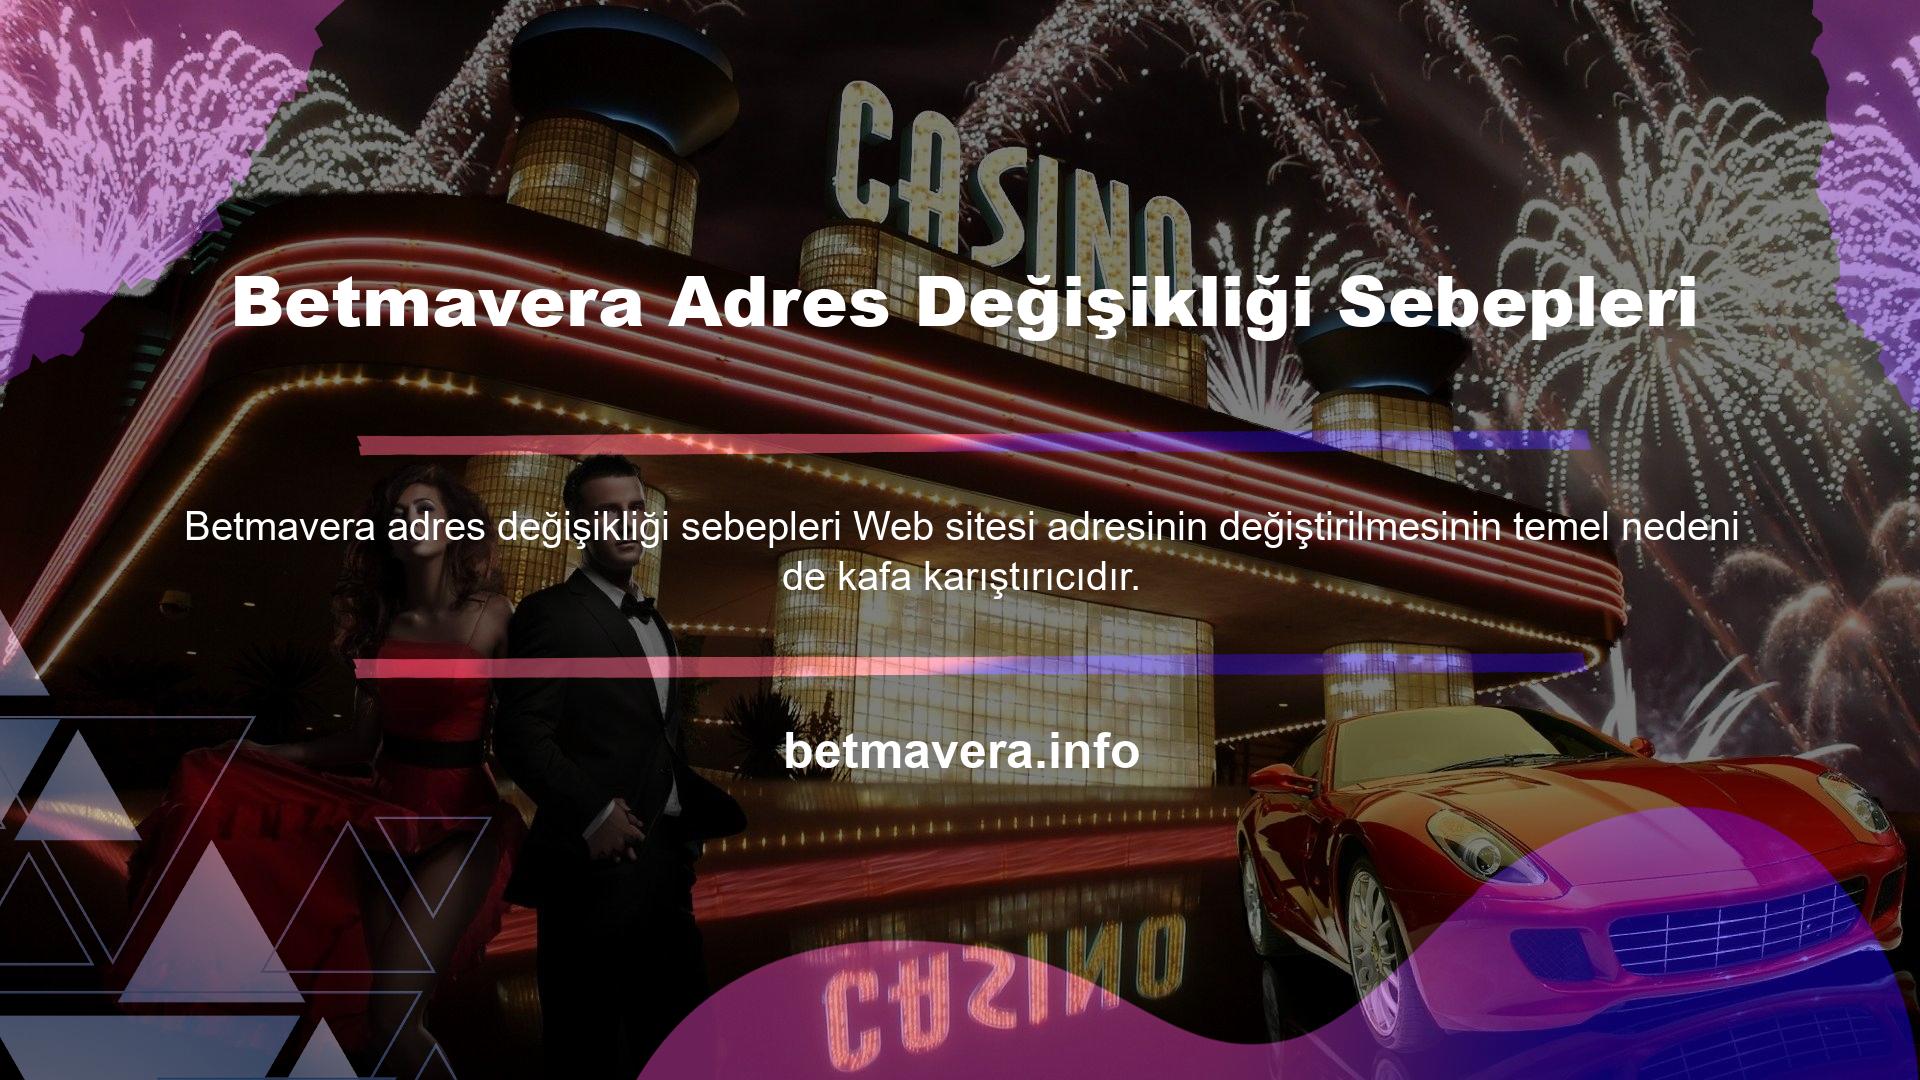 Diğer casino siteleri gibi Betmavera giriş adresi değişikliğinin de tamamen BTK ismi ile ilgili olduğu söylenebilir